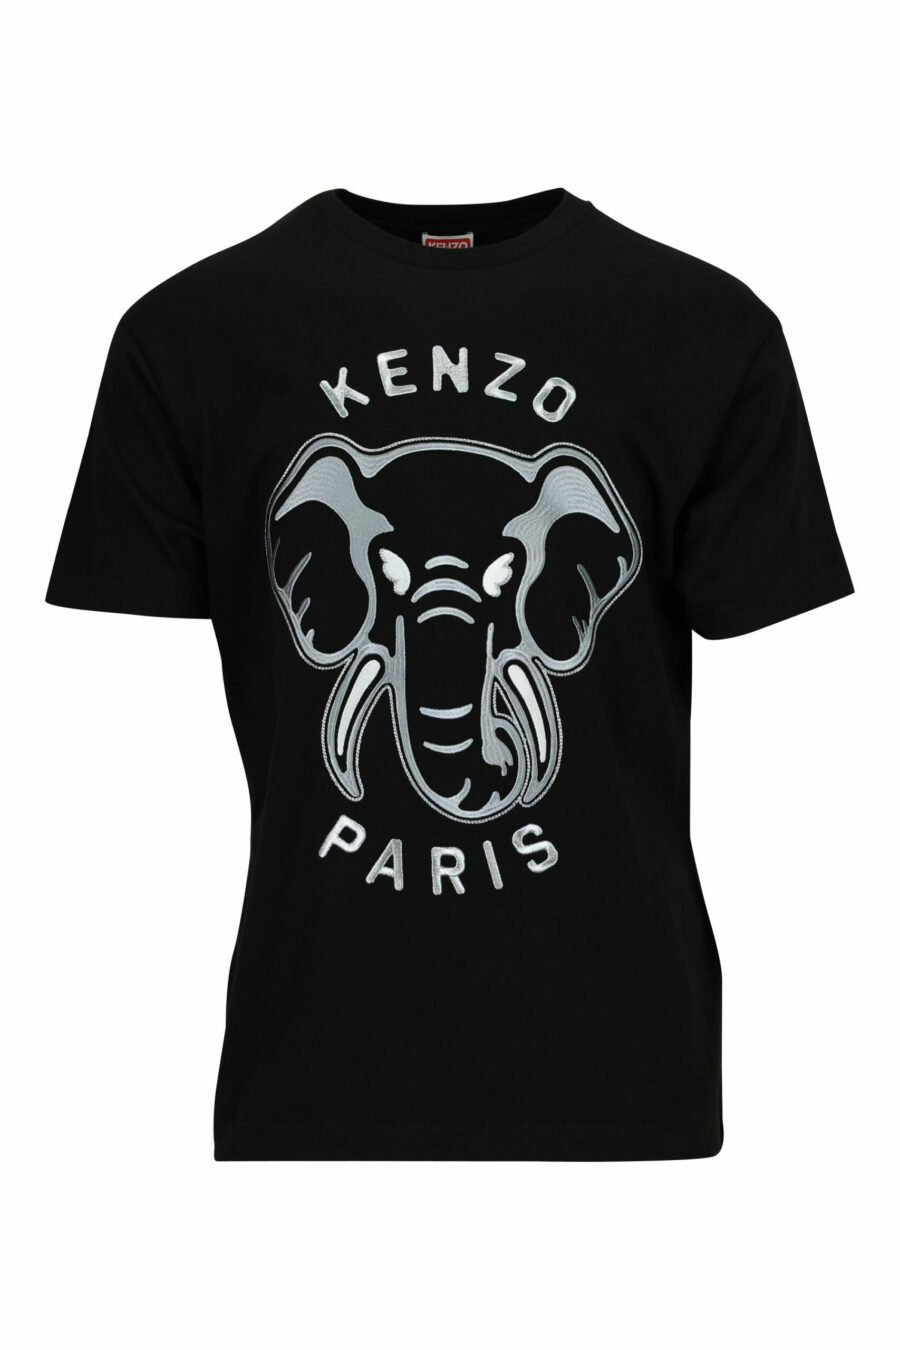 Schwarzes T-Shirt in Übergröße mit großem, geprägtem Elefanten-Logo - 3612230568839 skaliert